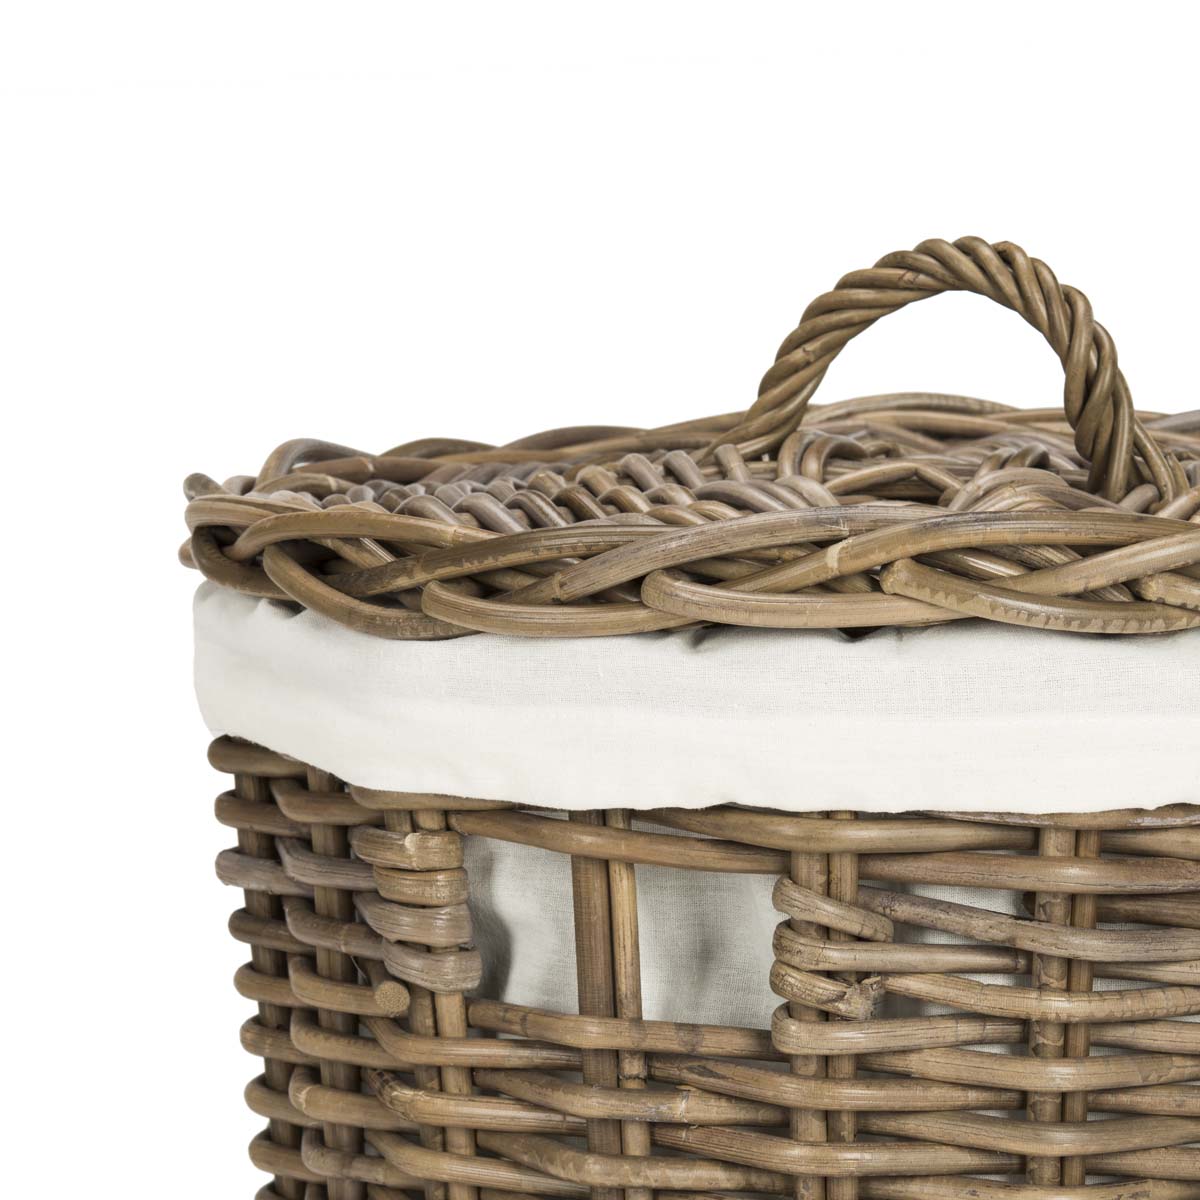 Safavieh Millen Rattan Round Set Of 2 Laundry Baskets , HAC6001 - Natural